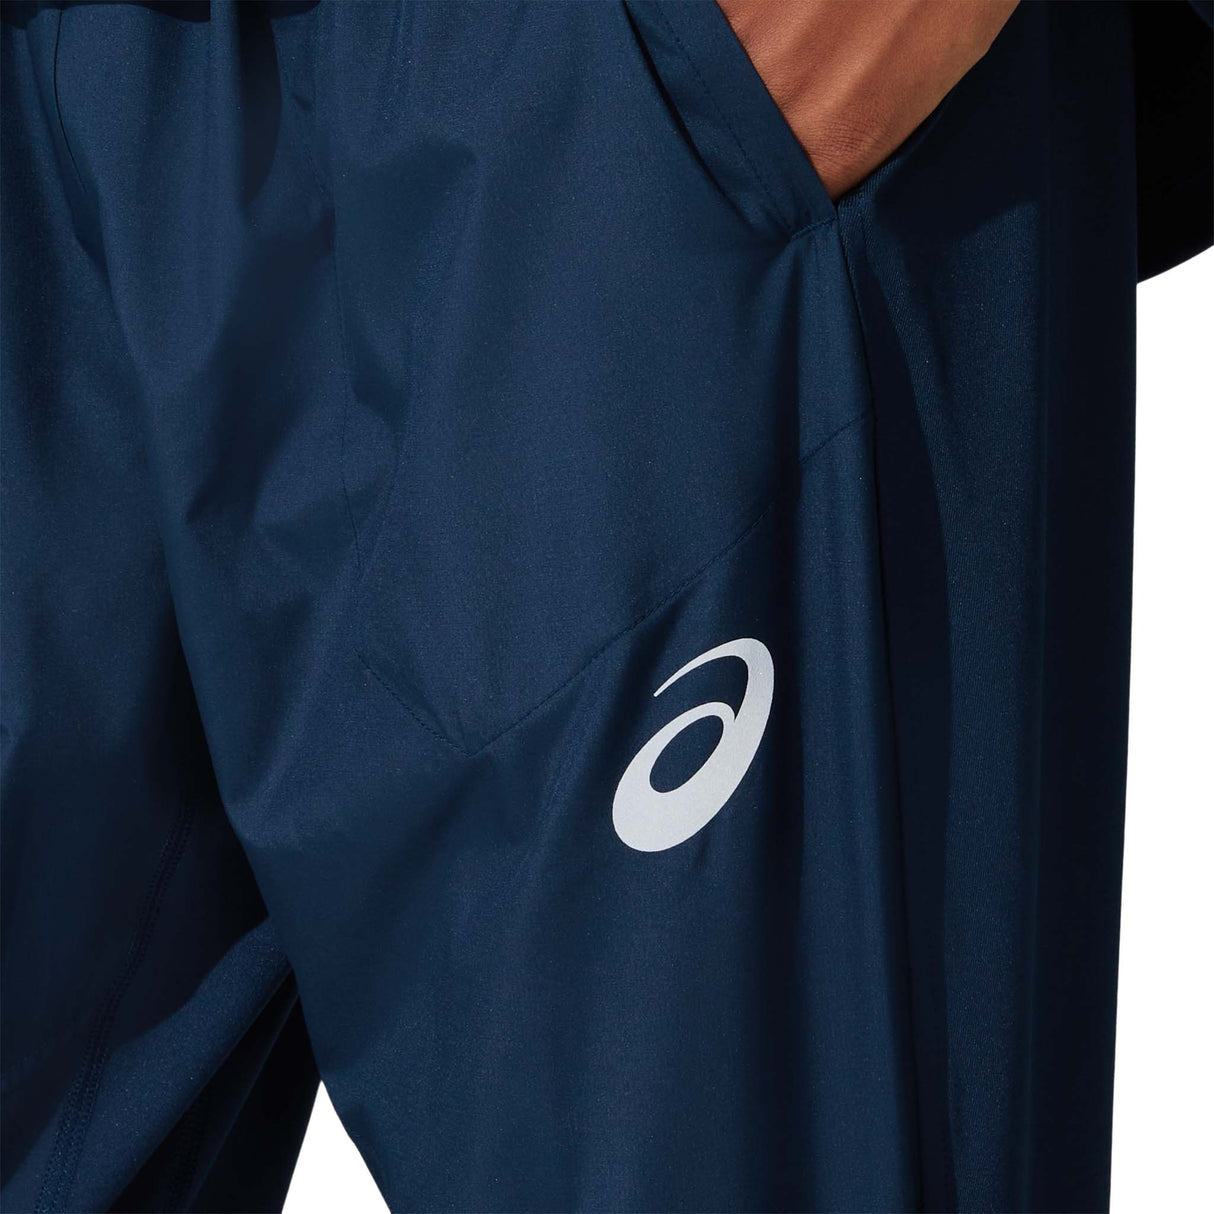 ASICS Visibility pantalon de course french blue homme logo poche